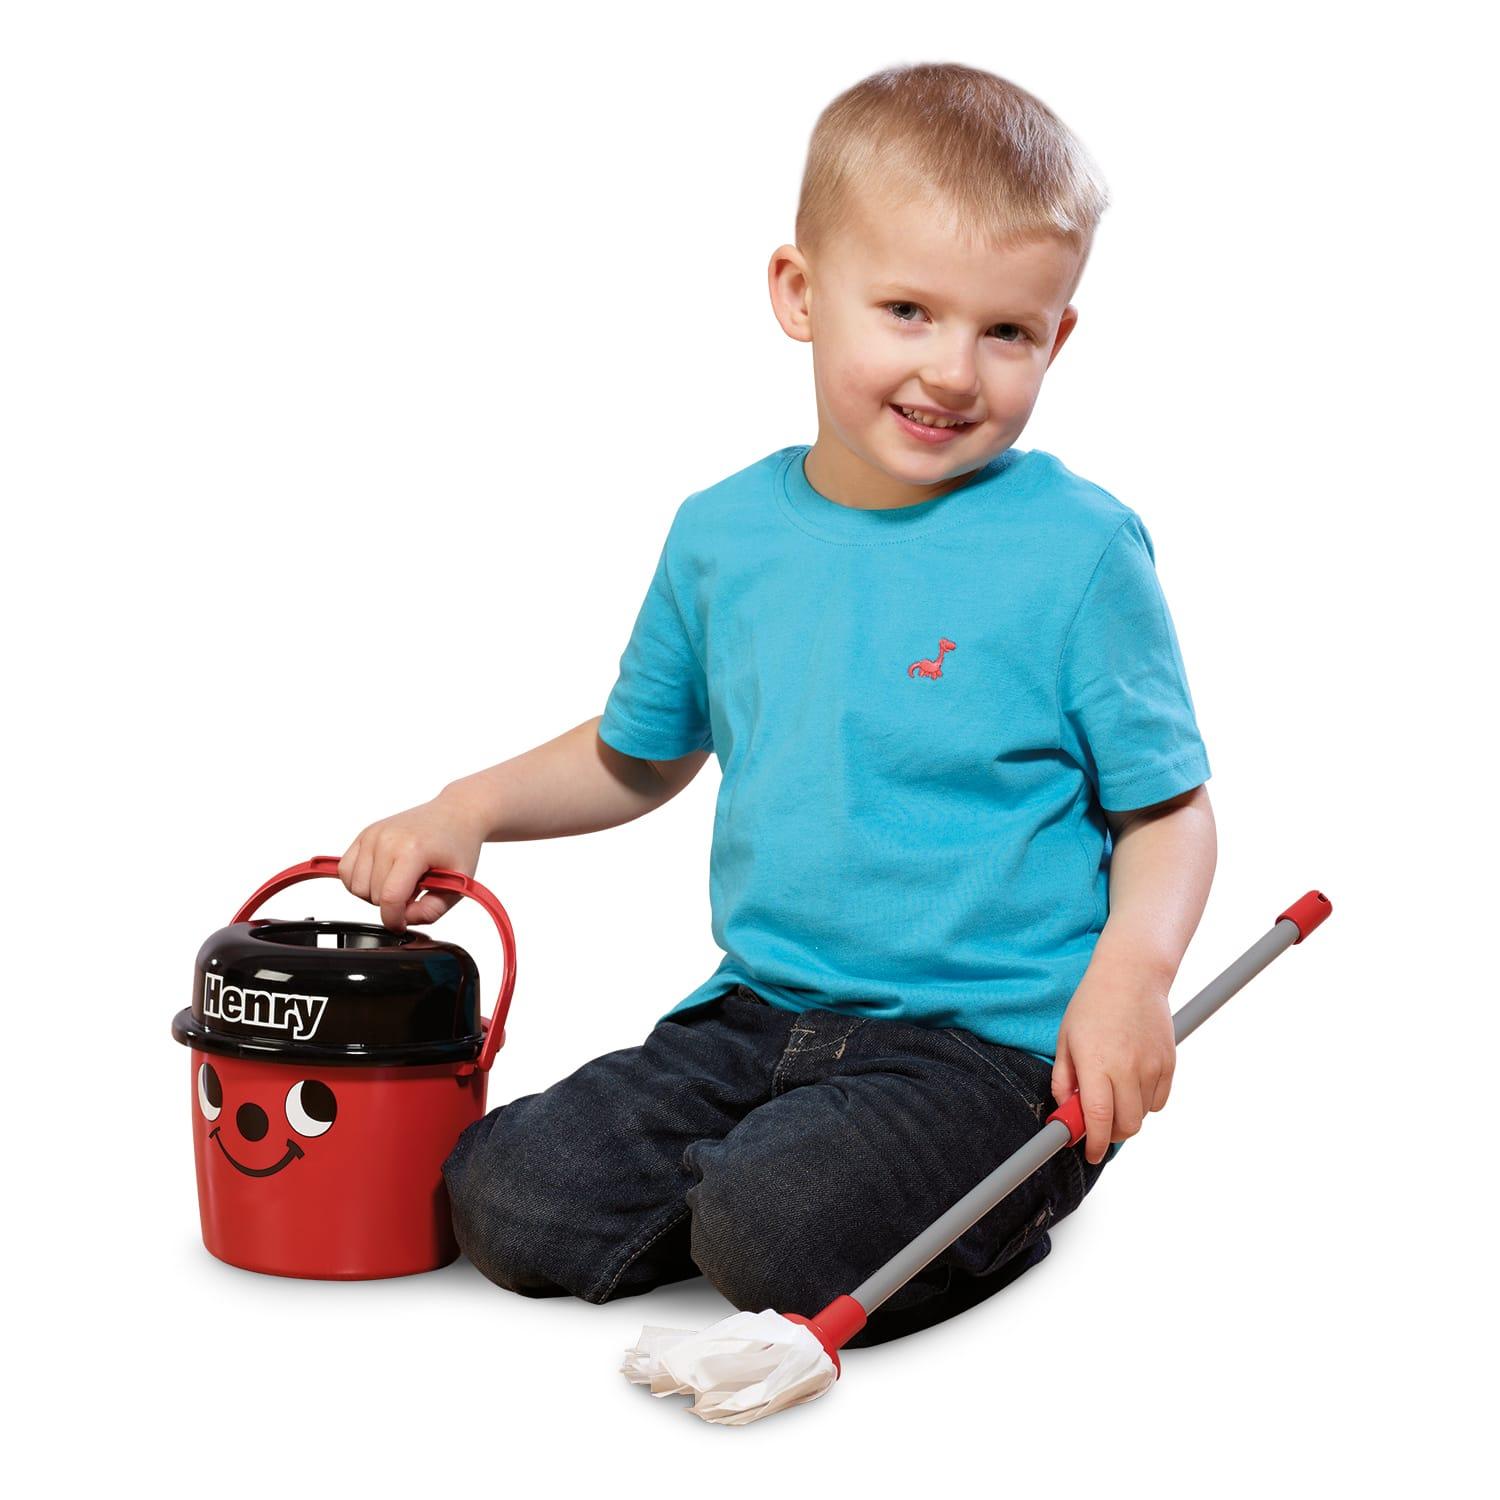 Casdon HETTY MOP & BUCKET Pretend Household Cleaning Play Pre-School Toy BNIP 